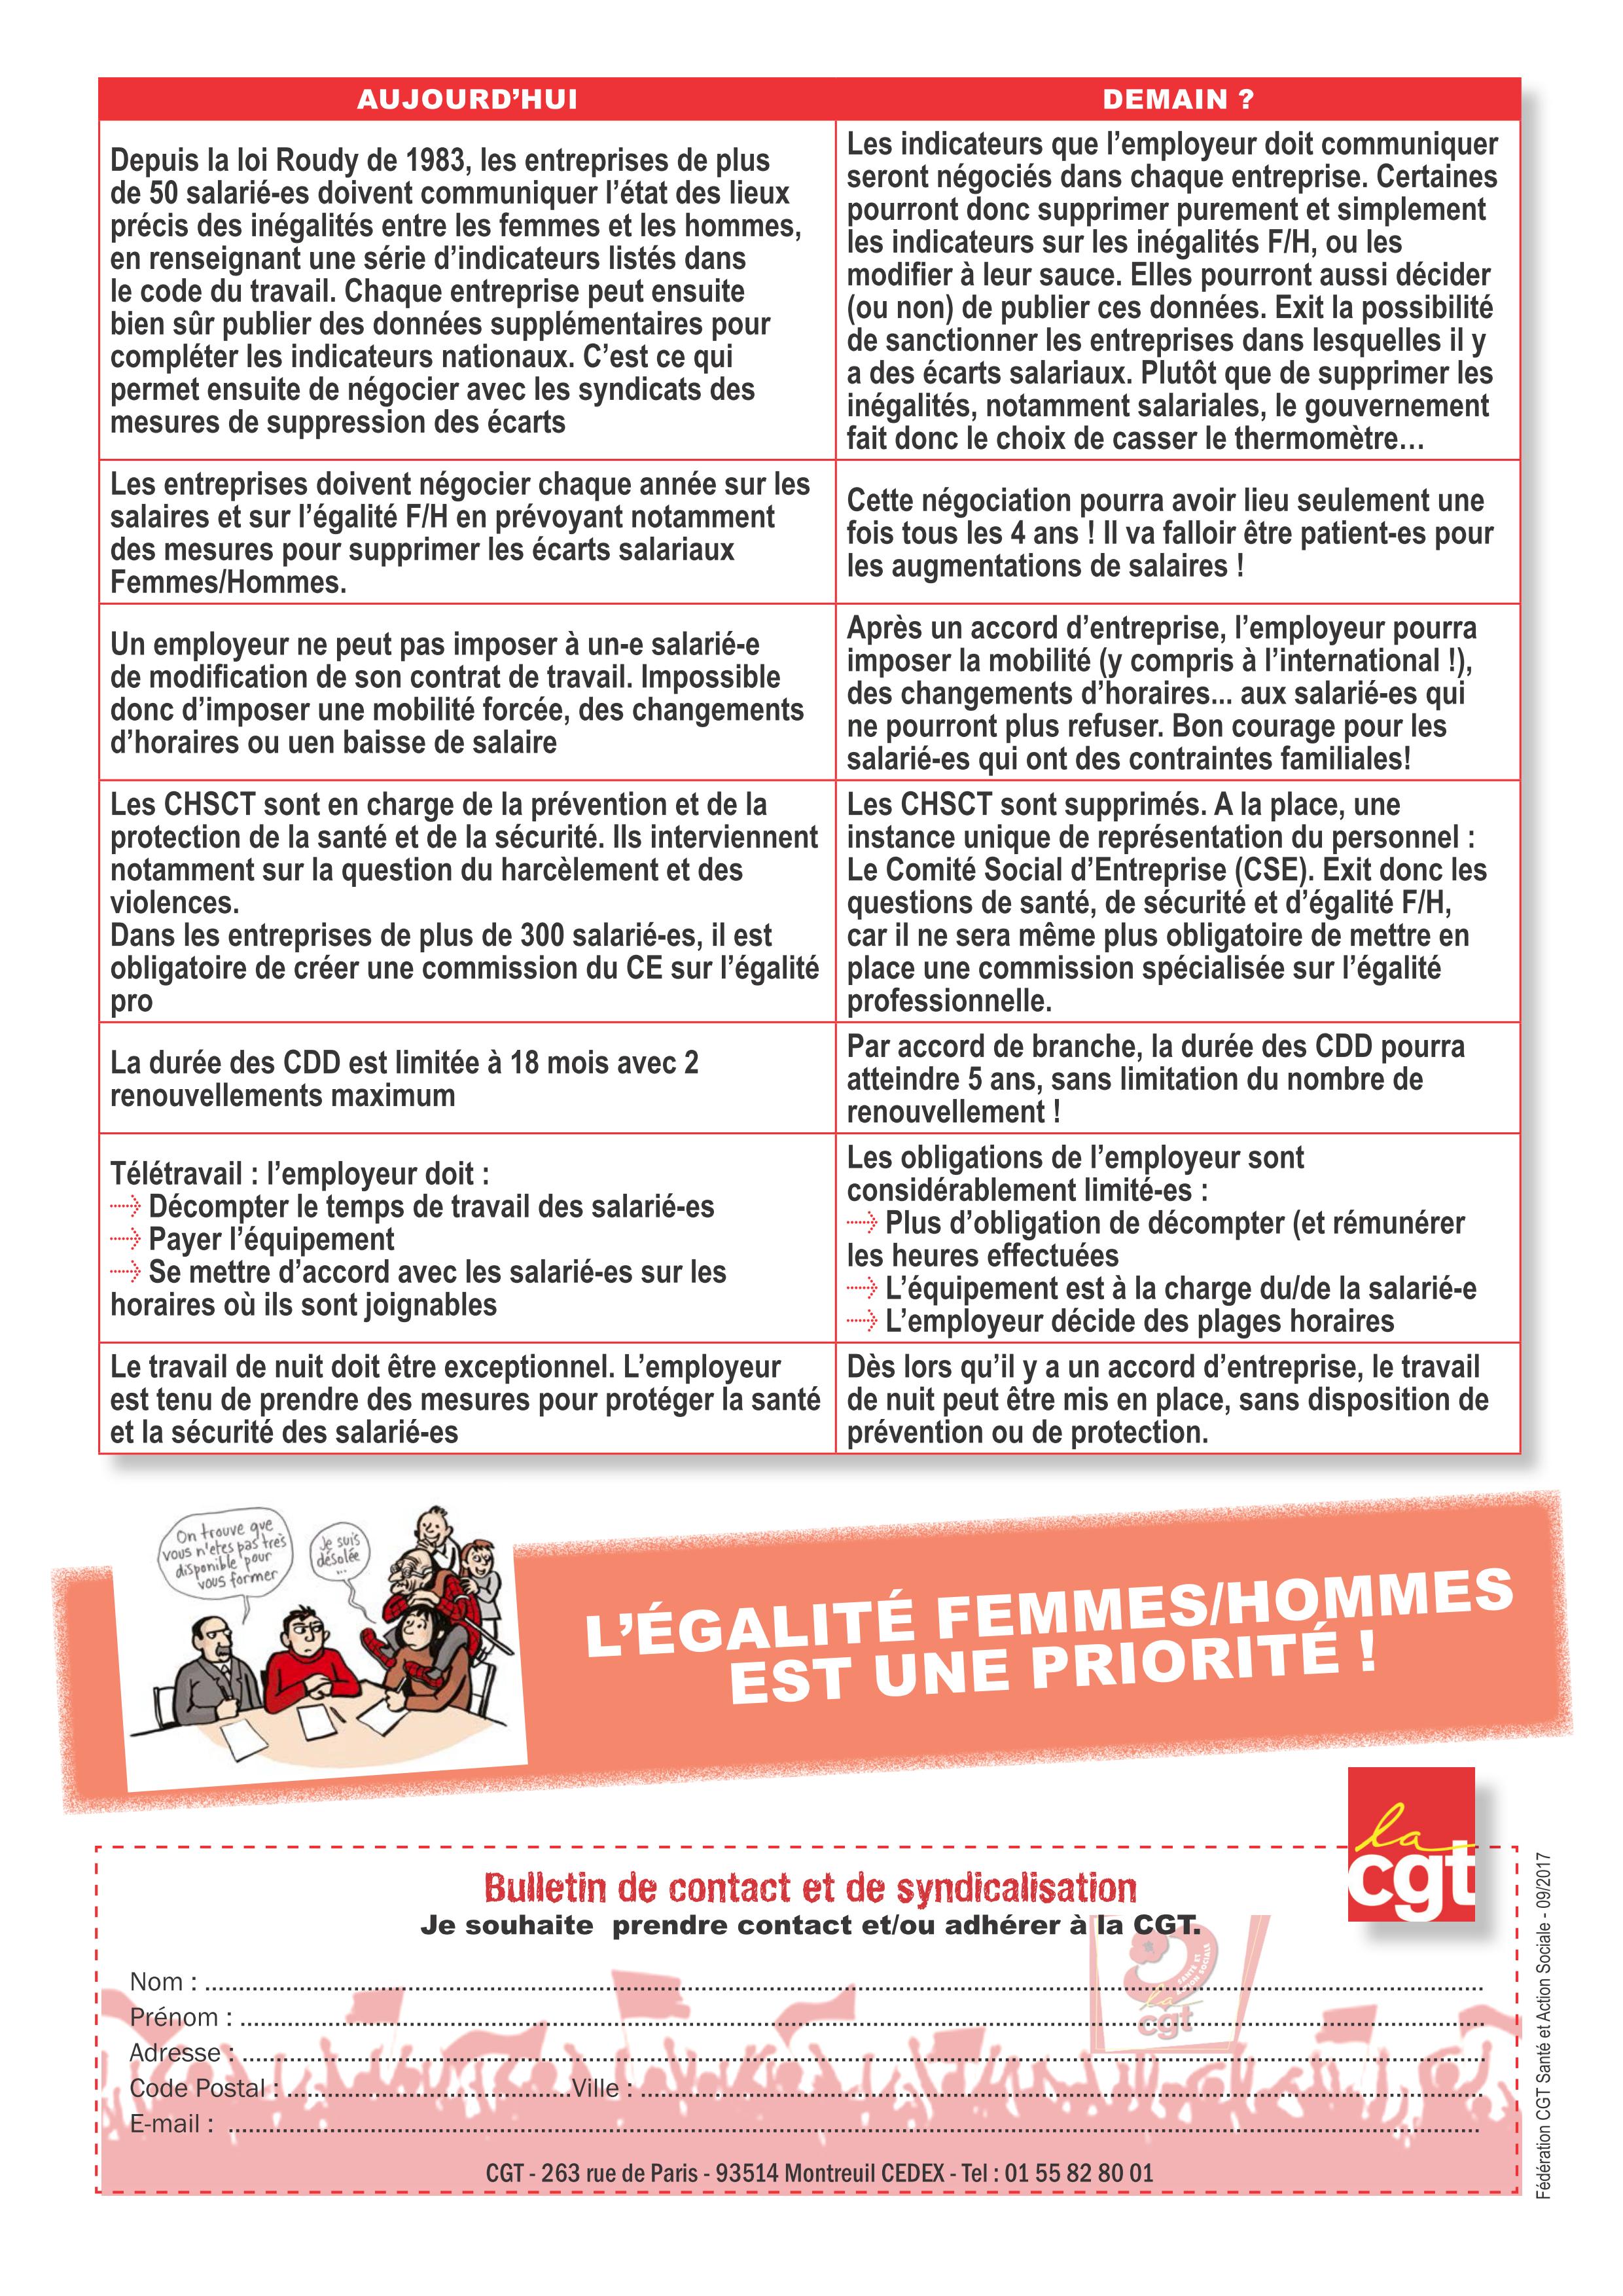 ORDONNANCES ET DROITS DES FEMMES : le gouvernement persiste et signe